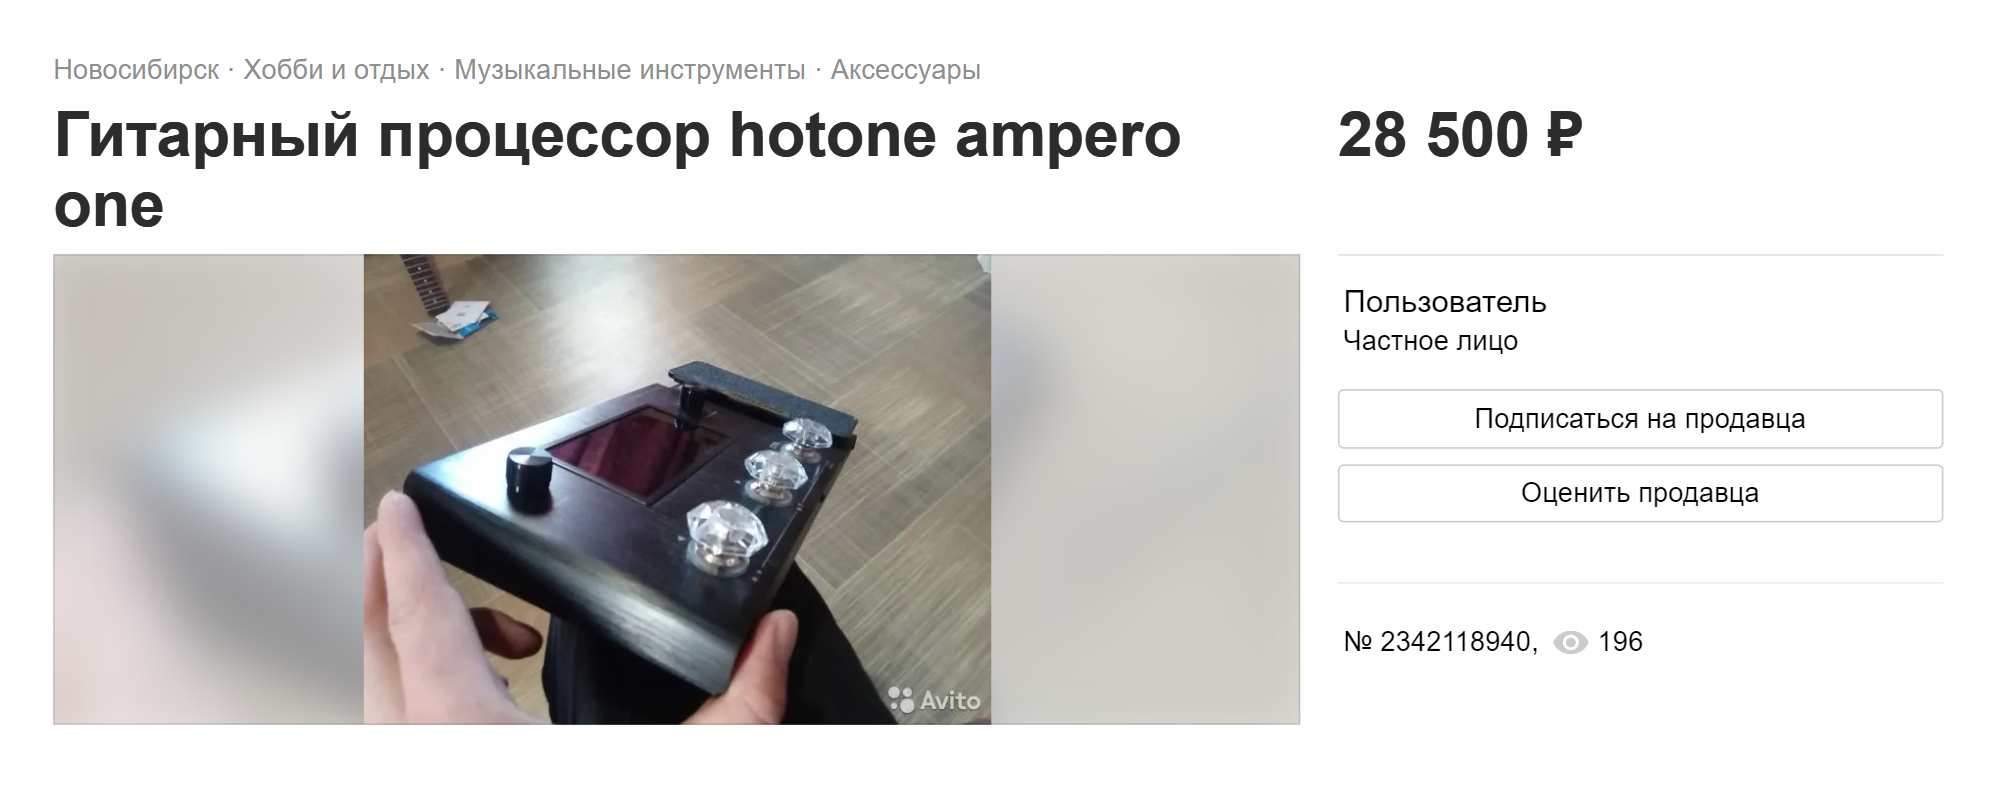 Гитарный процессор на «Авито» продают за 28 500 ₽. Новый такой же в музыкальных магазинах стоит больше 50 000 ₽. Источник: avito.ru